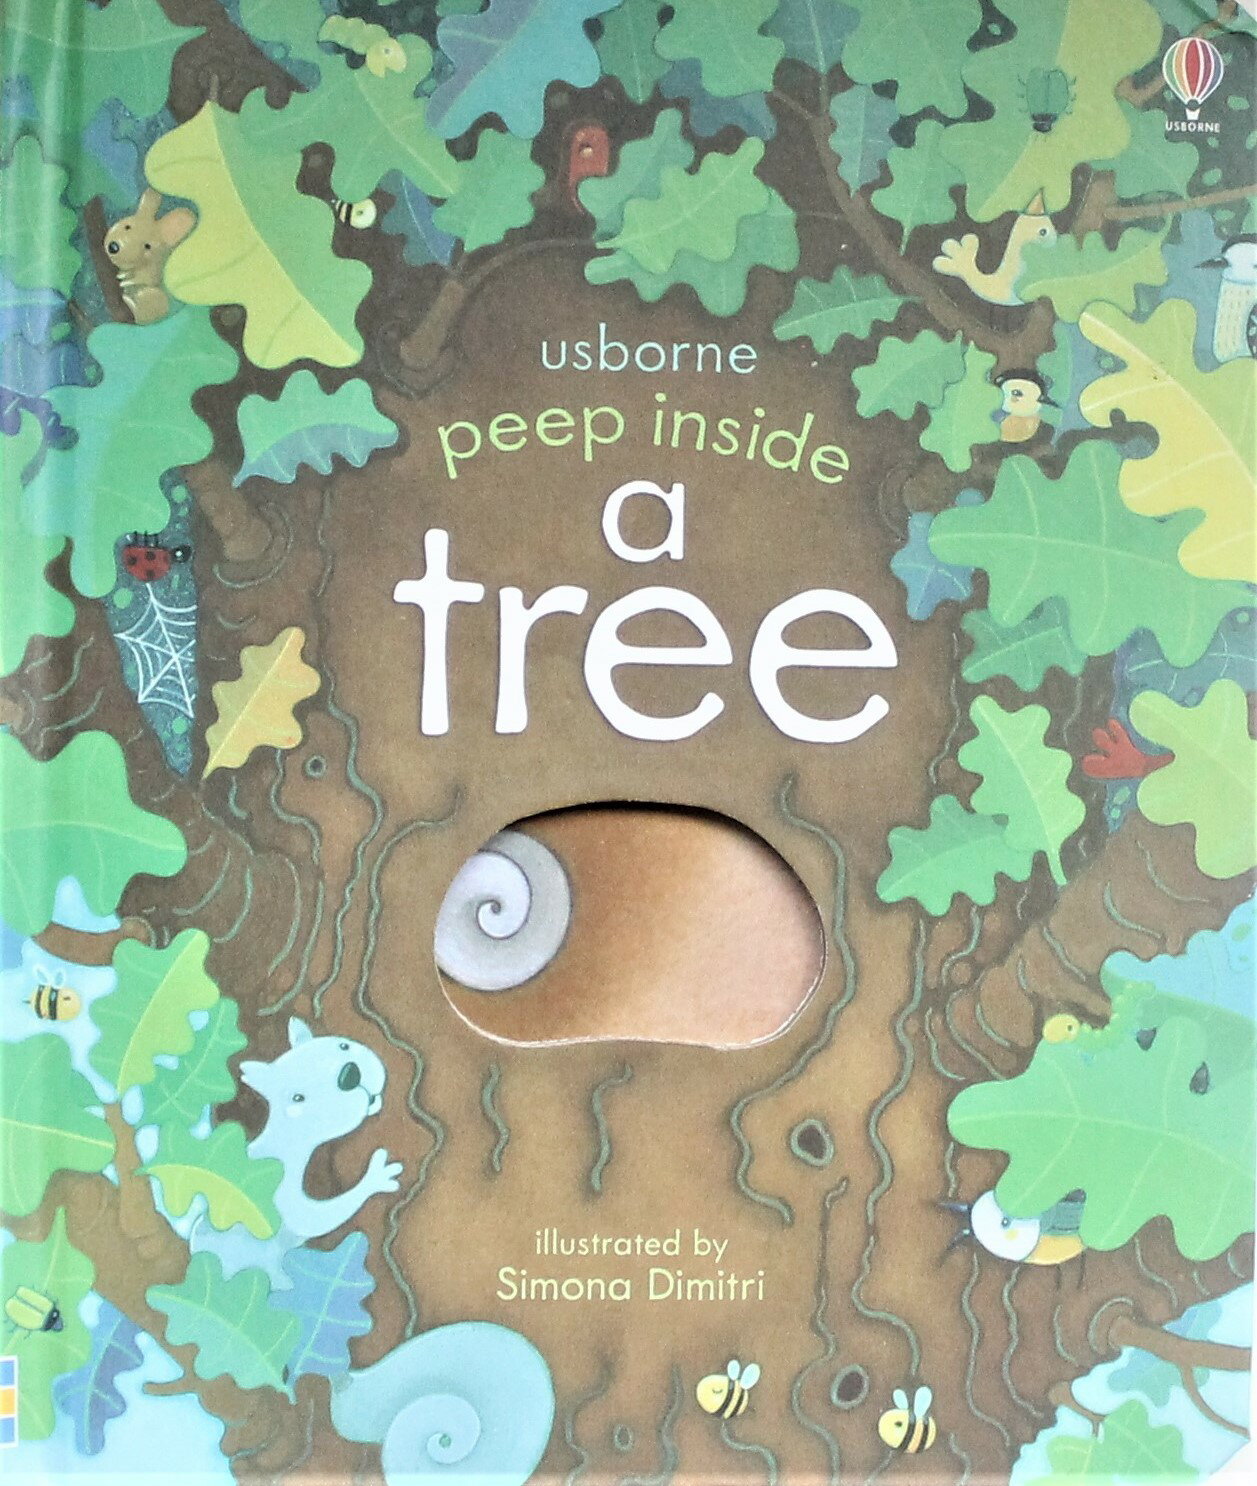 窓のある絵本 樹木 英語 English picture book「学ぶことは 見い出すこと。それは楽しい事です」幼児から小中学生の英語学習に使えます。Usborne peep inside the forest